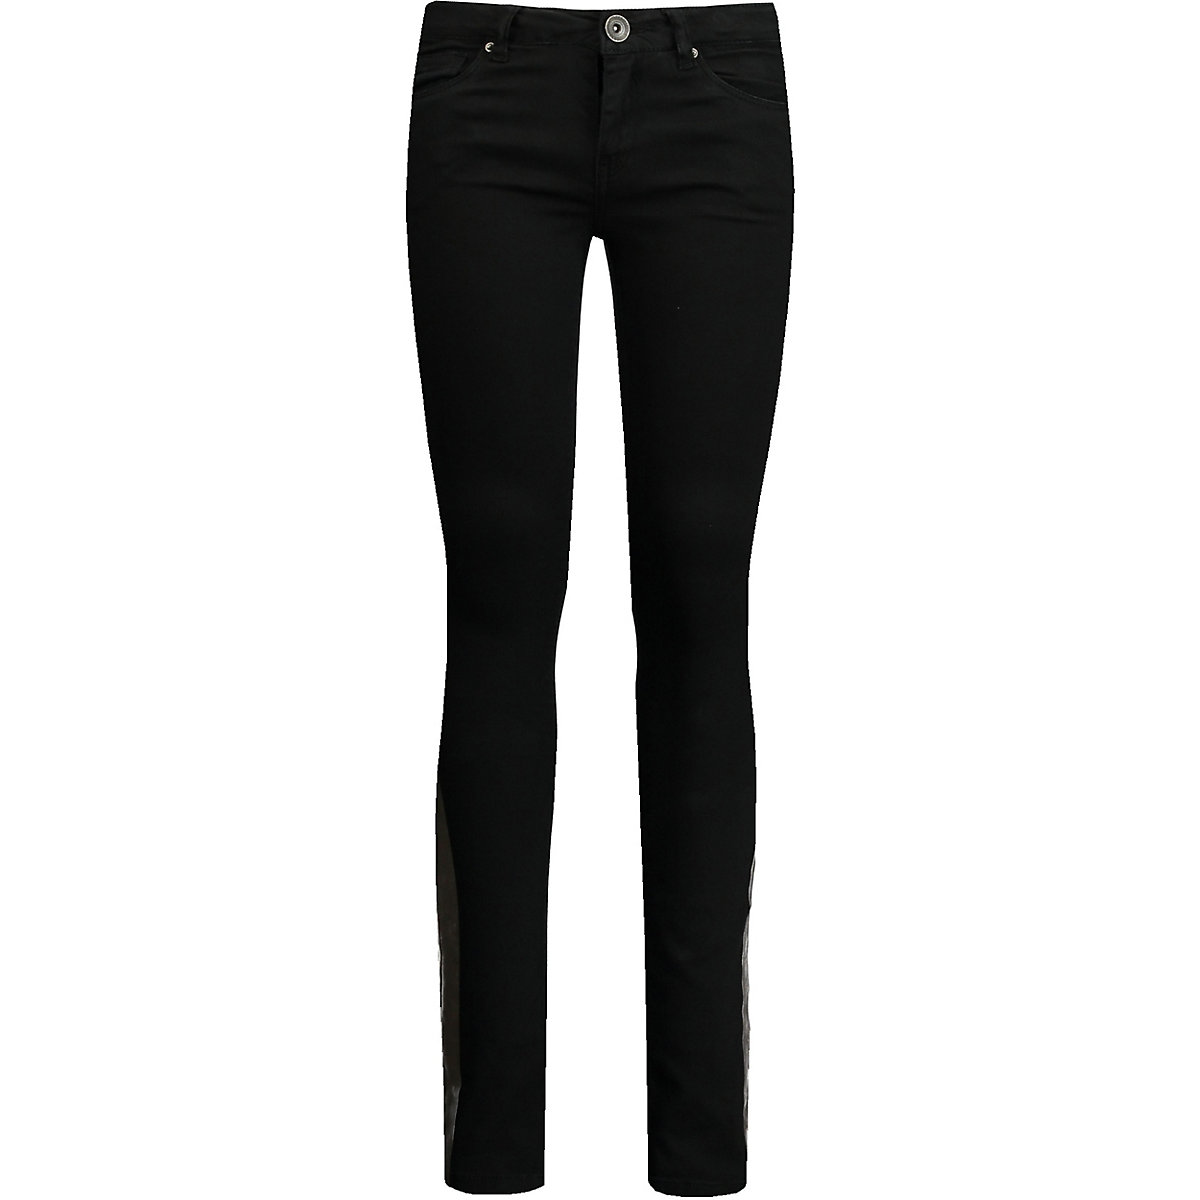 GARCIA JEANS Jeans SARA Slim Fit für Mädchen black denim PR8494